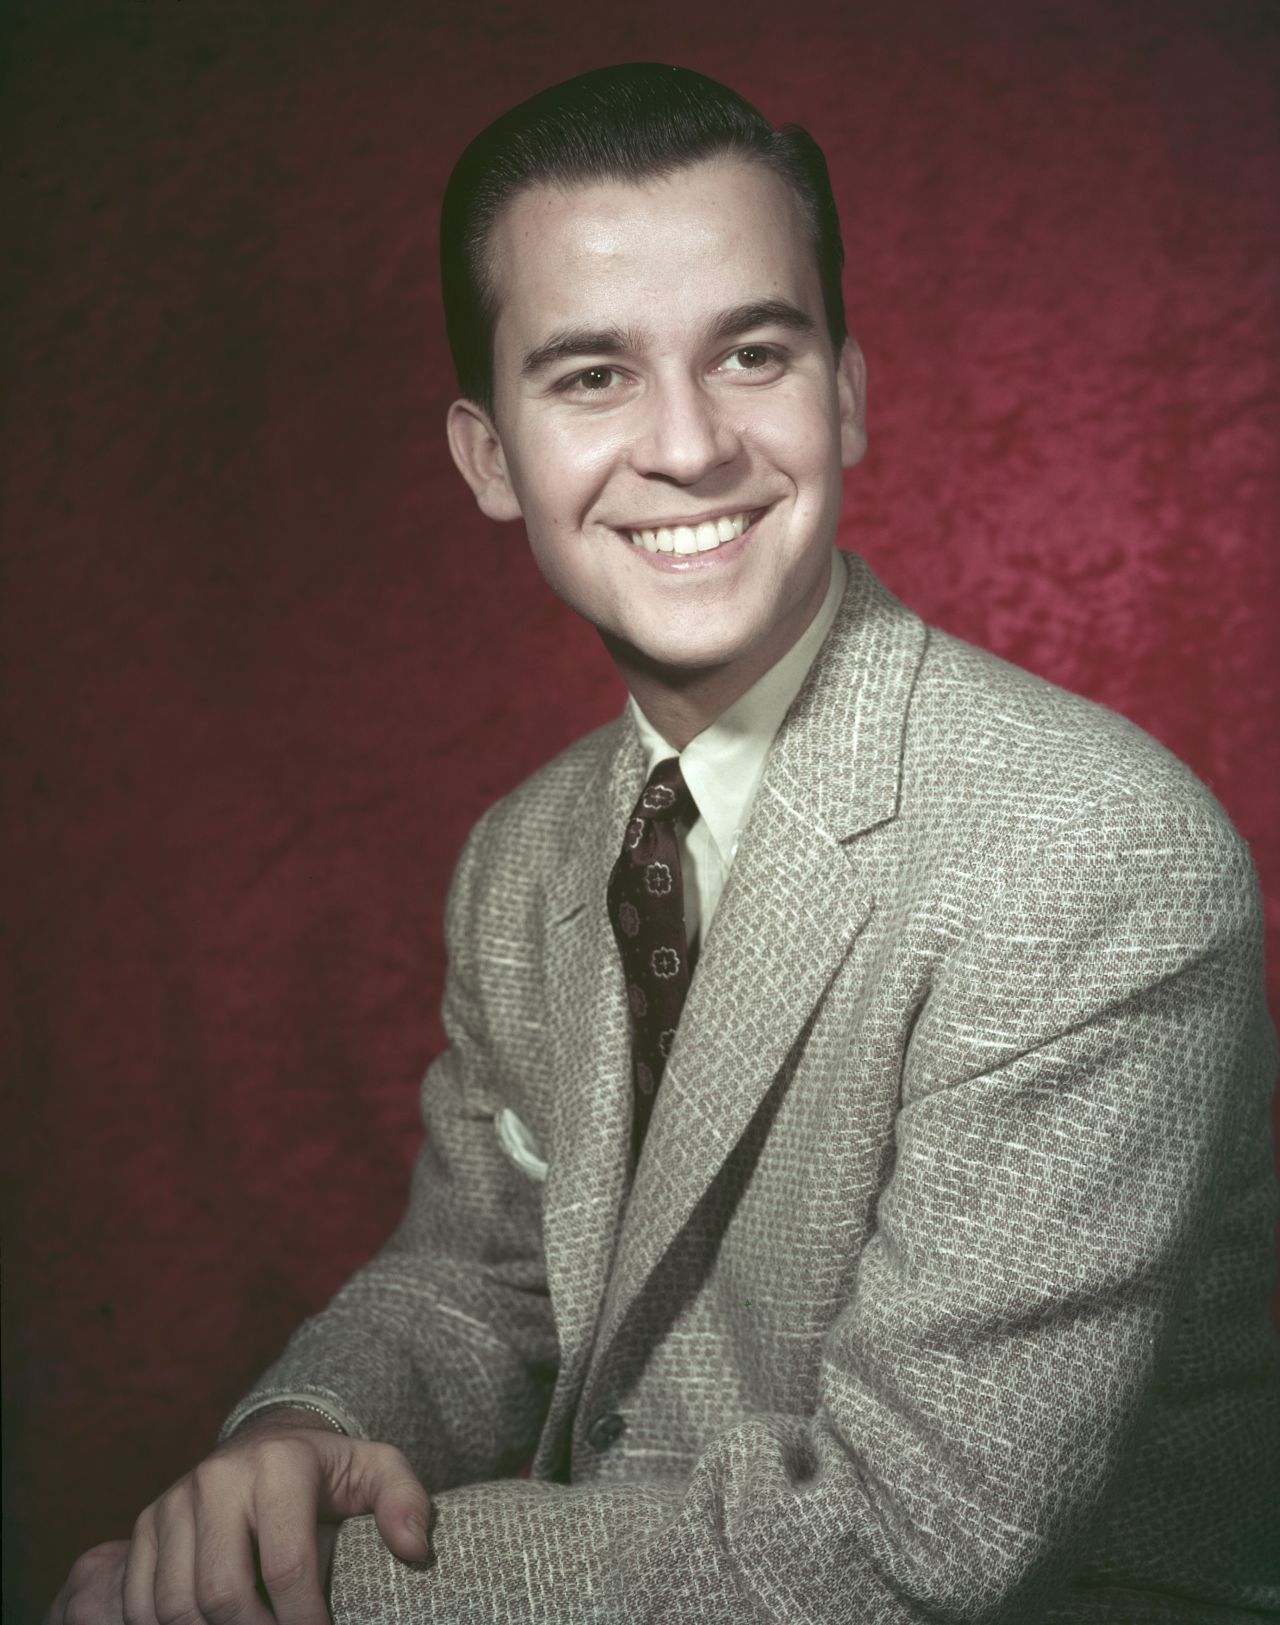 Clark circa 1955.